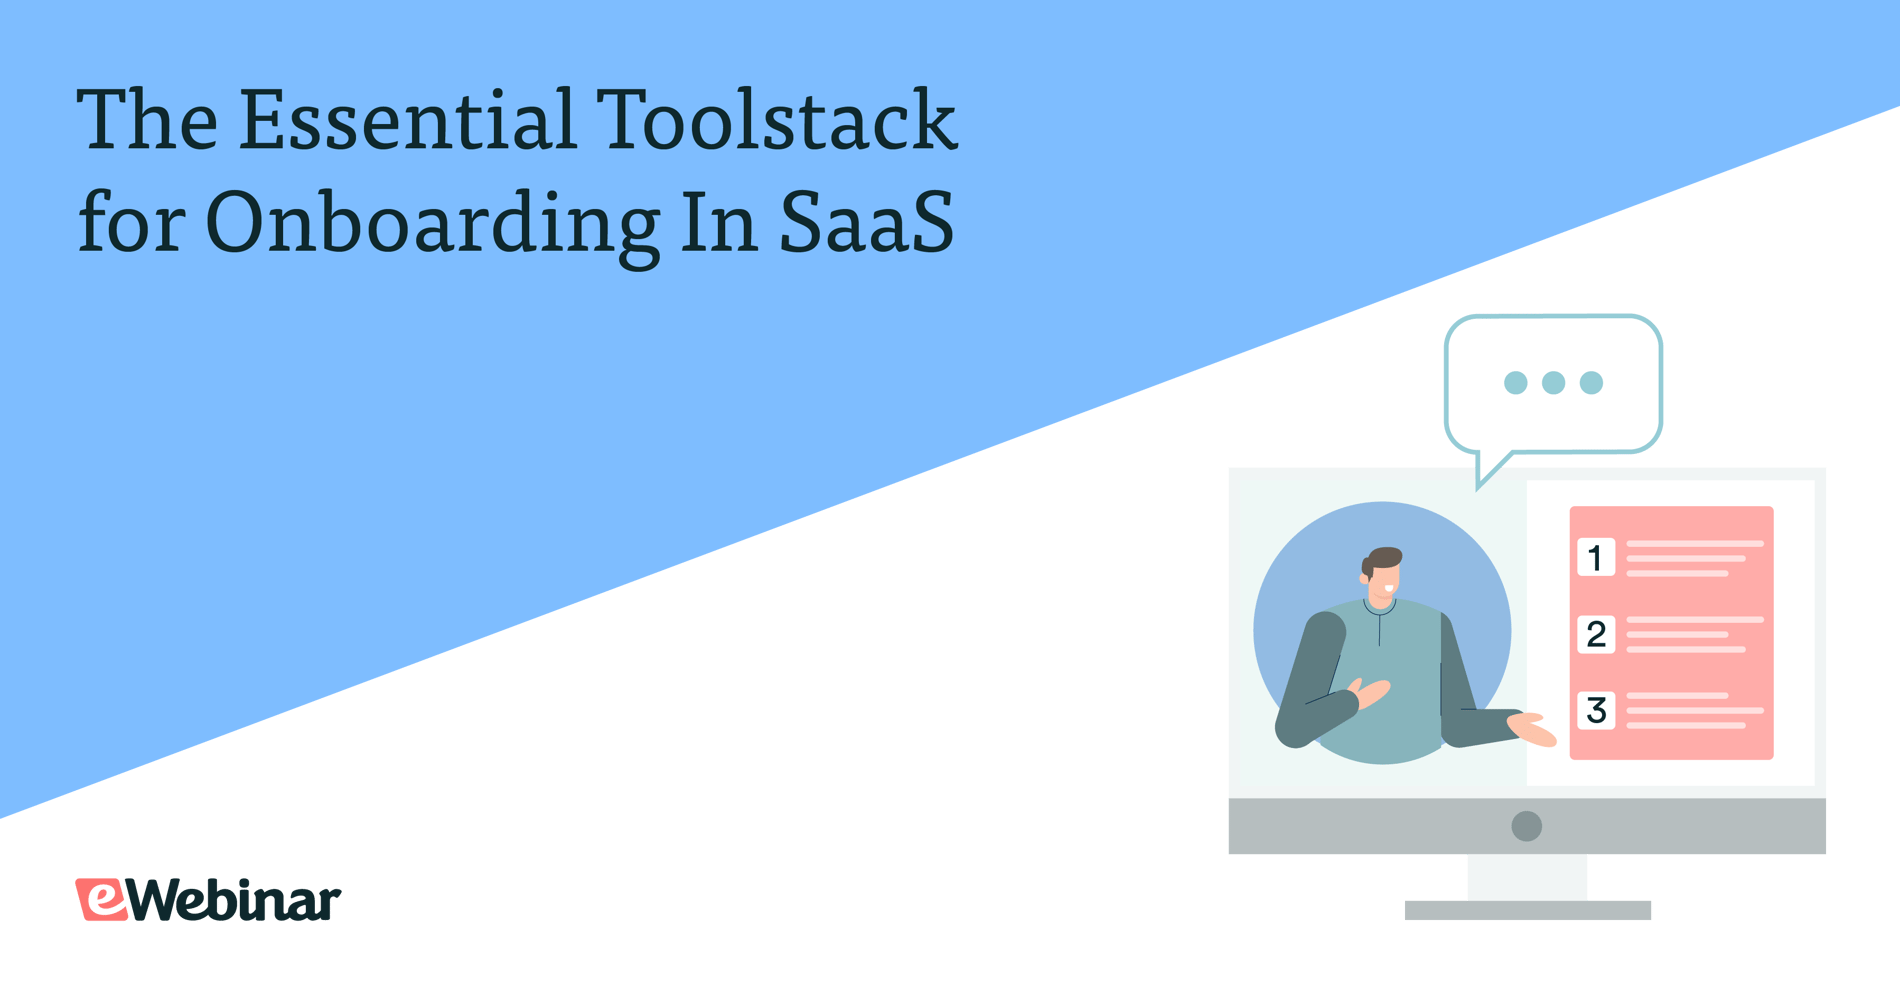 The Essential Toolstack for Onboarding In SaaS - con eWebinar, Userpilot, herramientas de automatización del correo electrónico y herramientas de chatbot/soporte